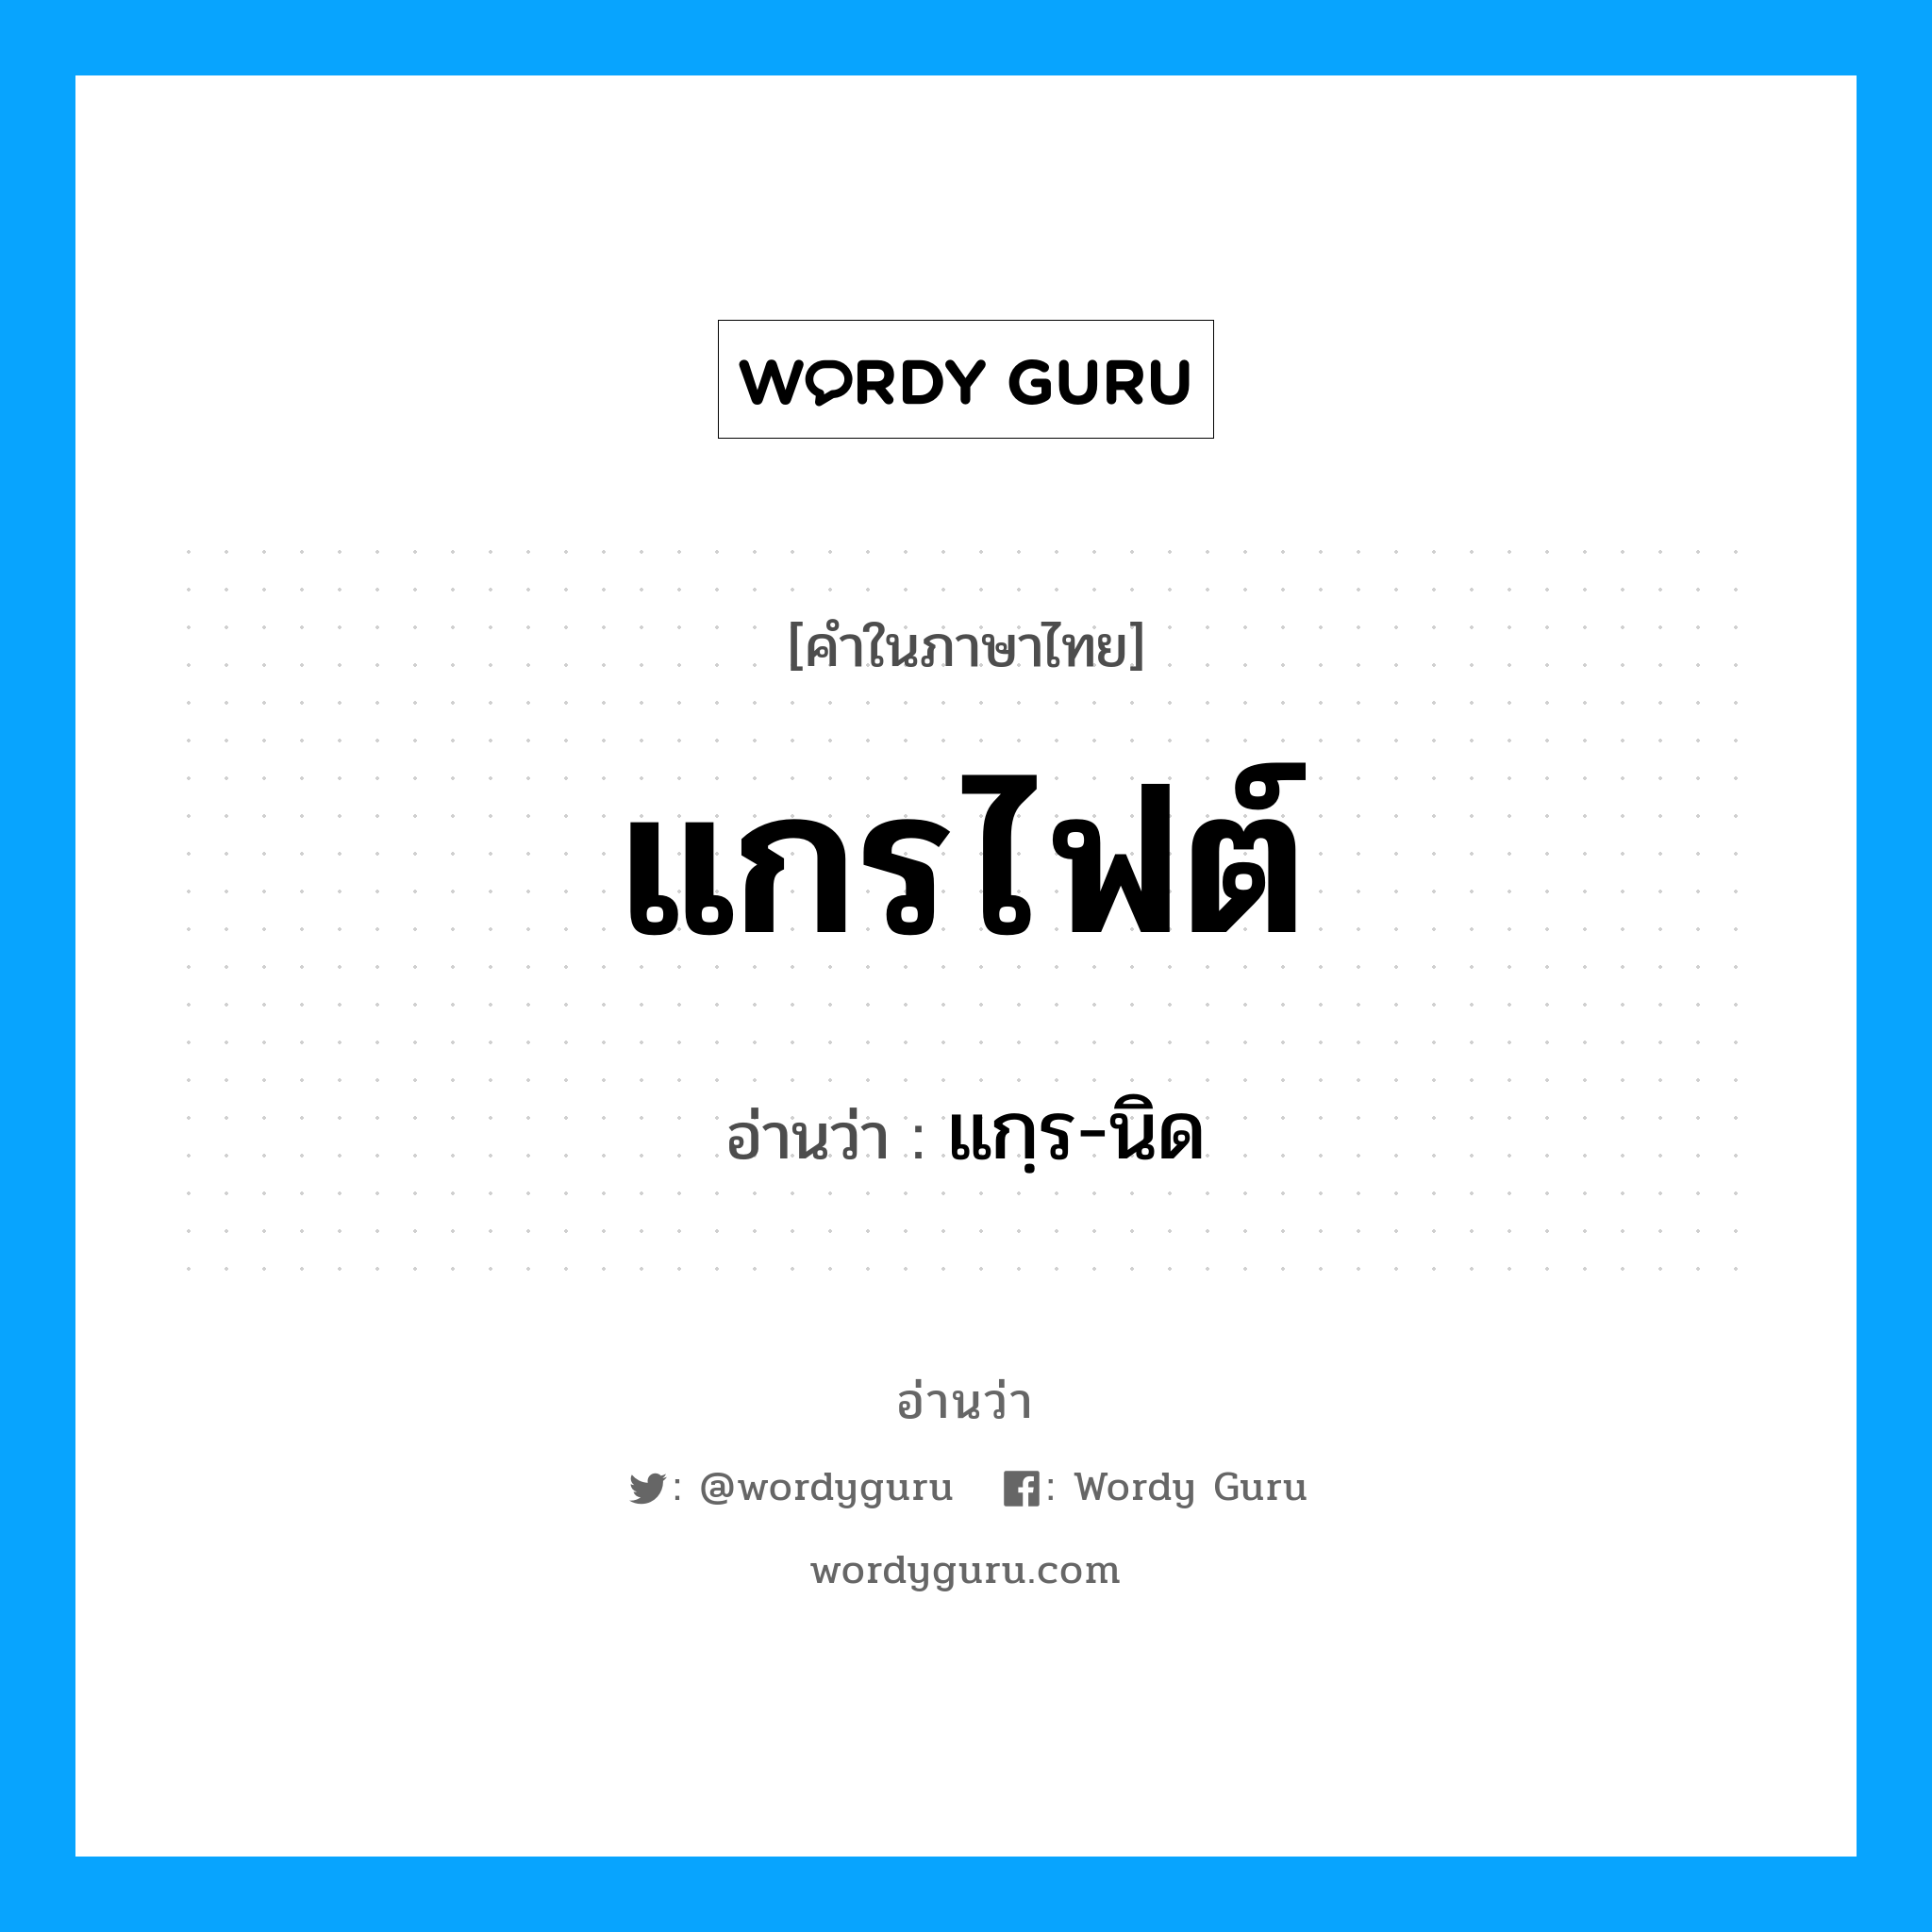 แกฺร-นิด เป็นคำอ่านของคำไหน?, คำในภาษาไทย แกฺร-นิด อ่านว่า แกรไฟต์